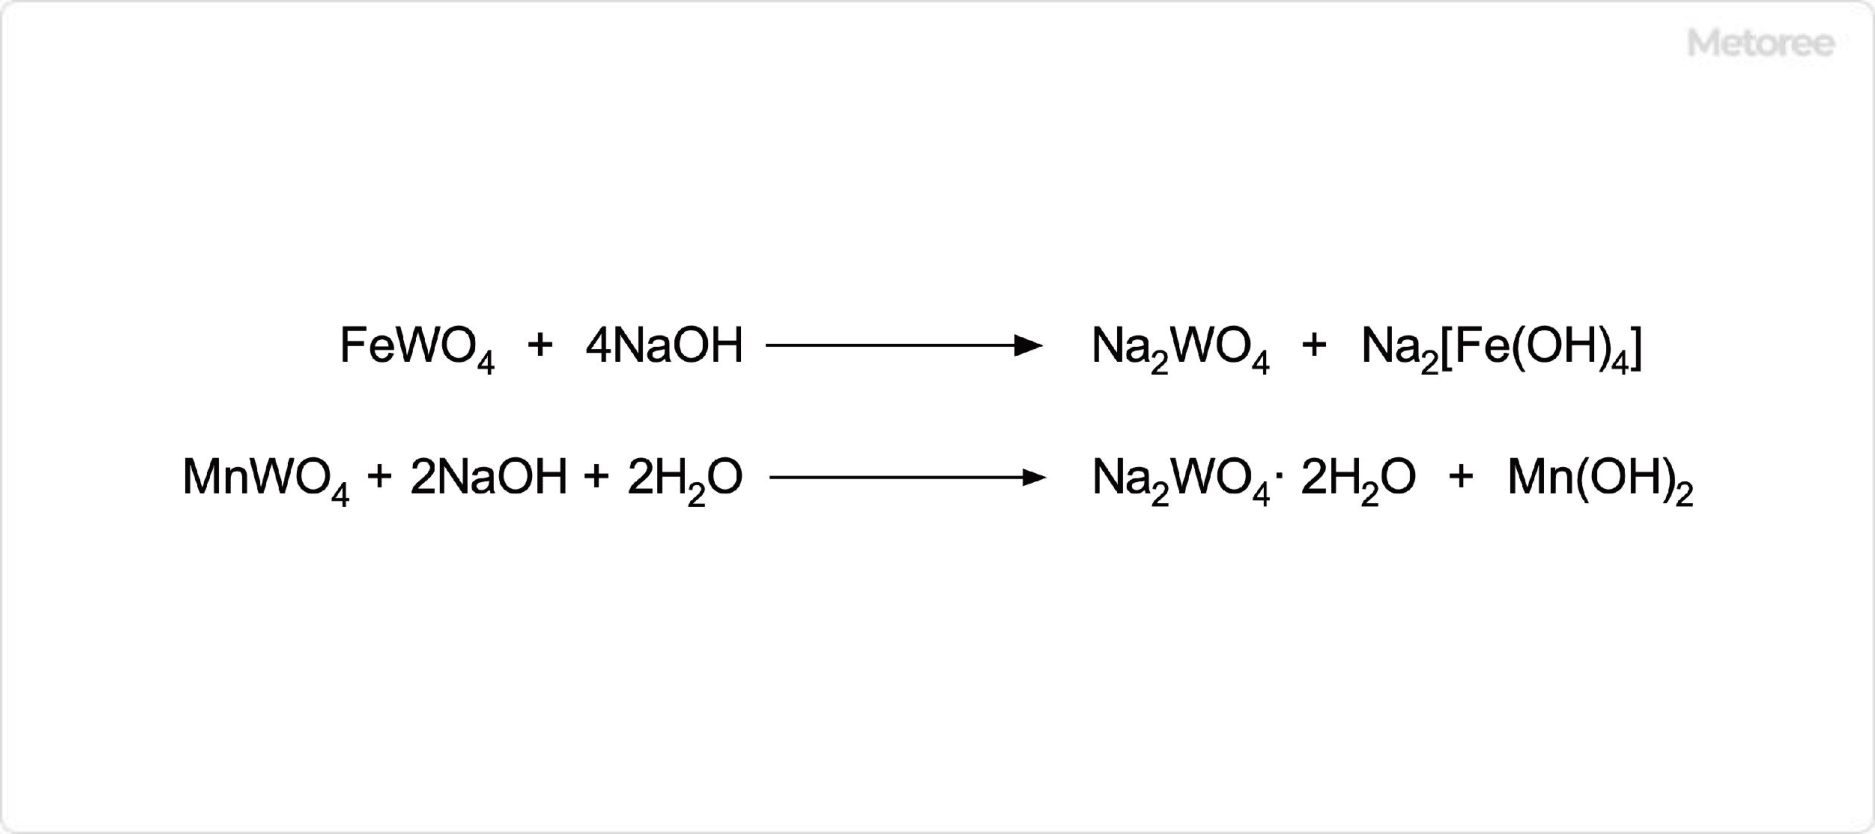 タングステン酸ナトリウムの合成